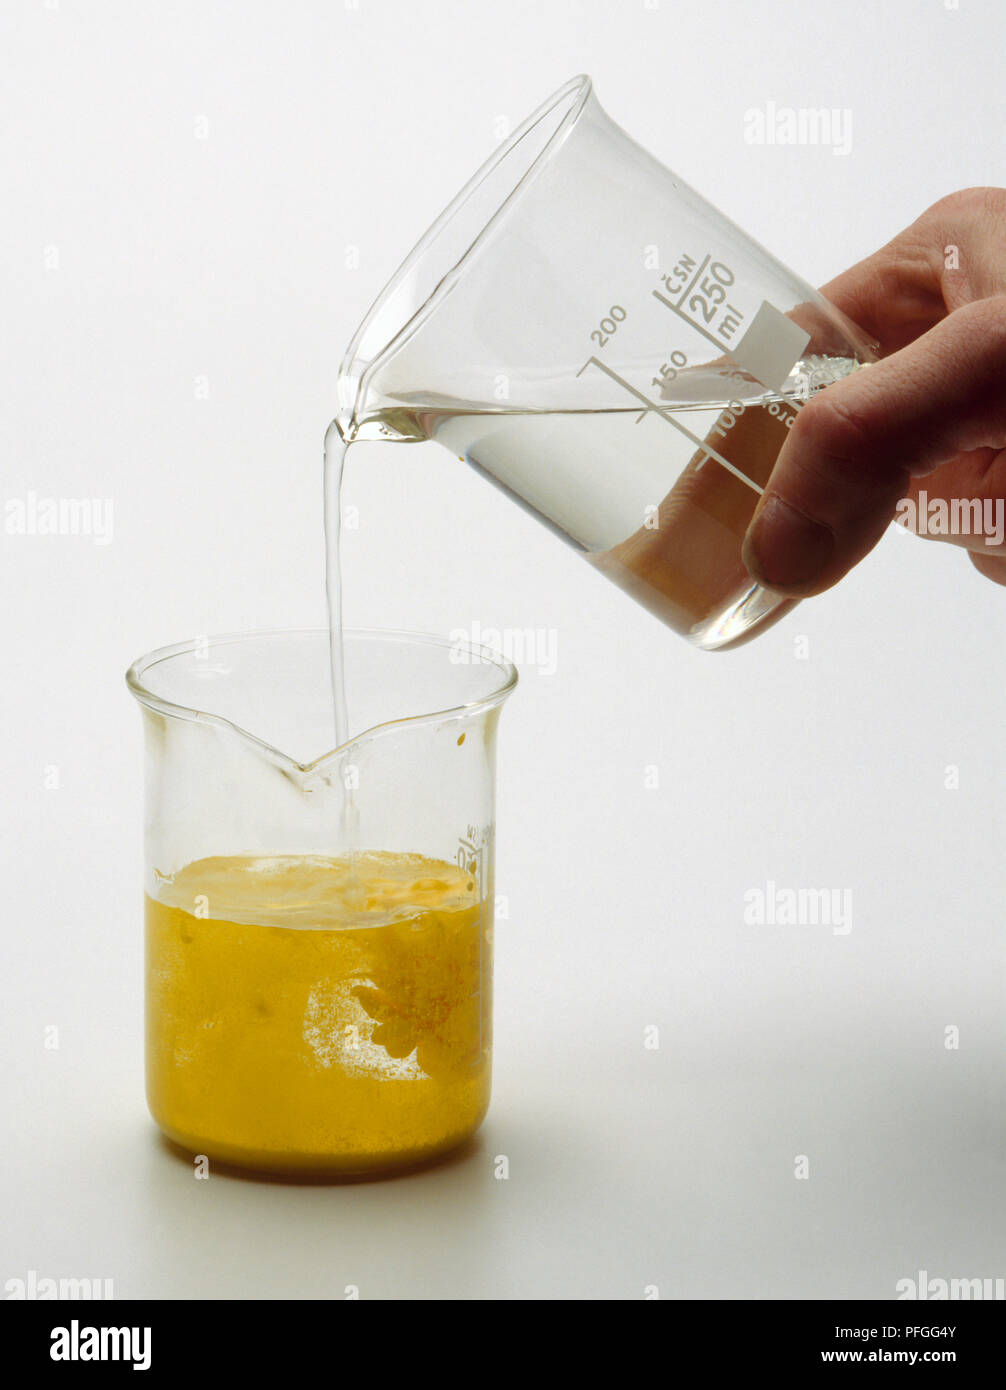 Soluzioni di potassio e ioduro in acqua e la soluzione di nitrato di piombo  in acqua vengono miscelati insieme, virava al giallo e formando un ioduro di  piombo Foto stock - Alamy